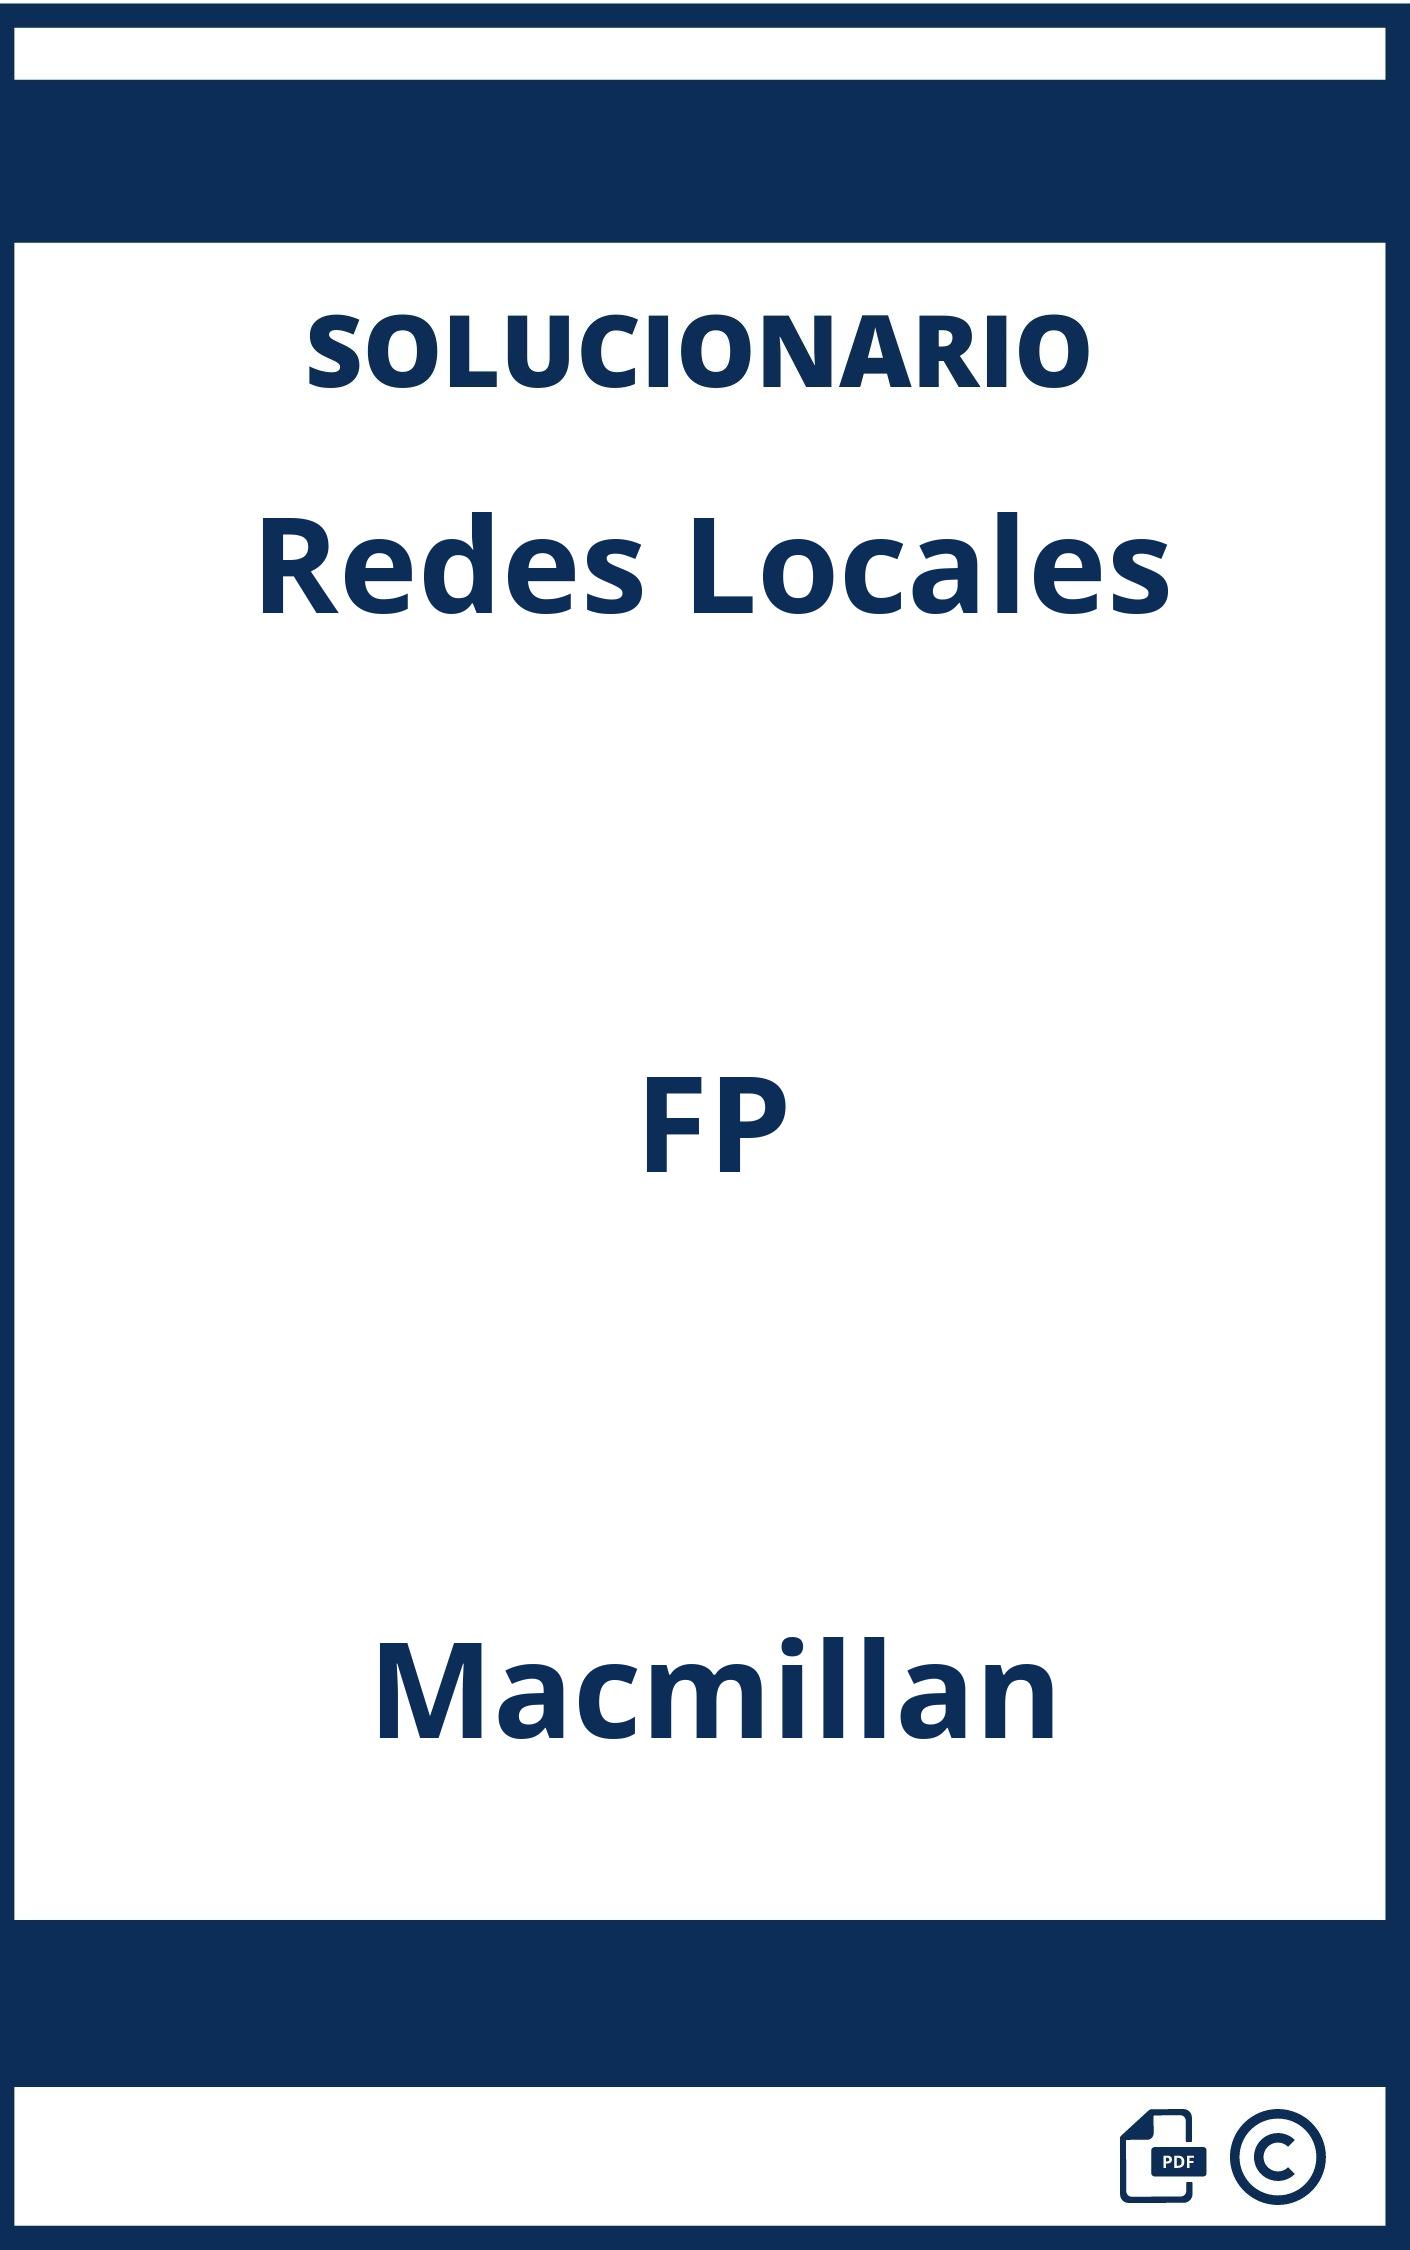 Solucionario Redes Locales FP Macmillan